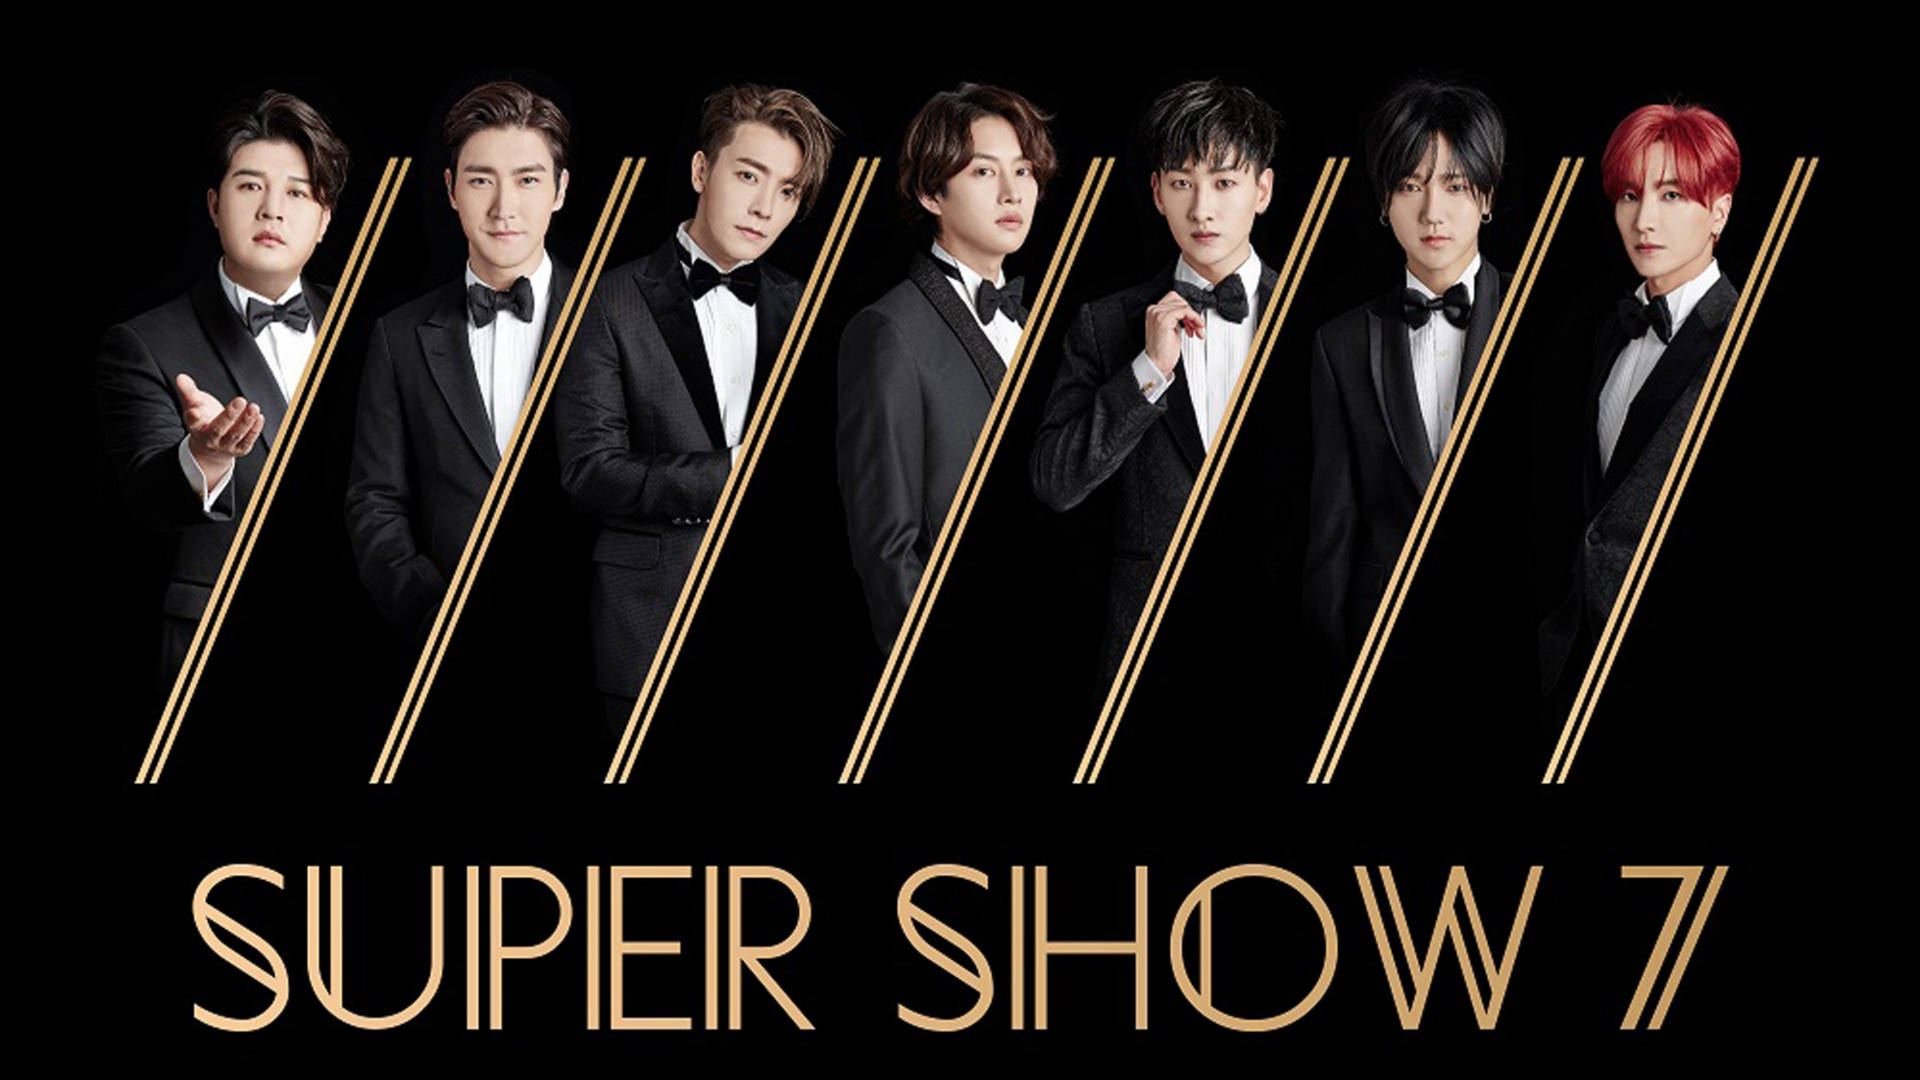 Superjunior Super Show 7 Fondo de pantalla